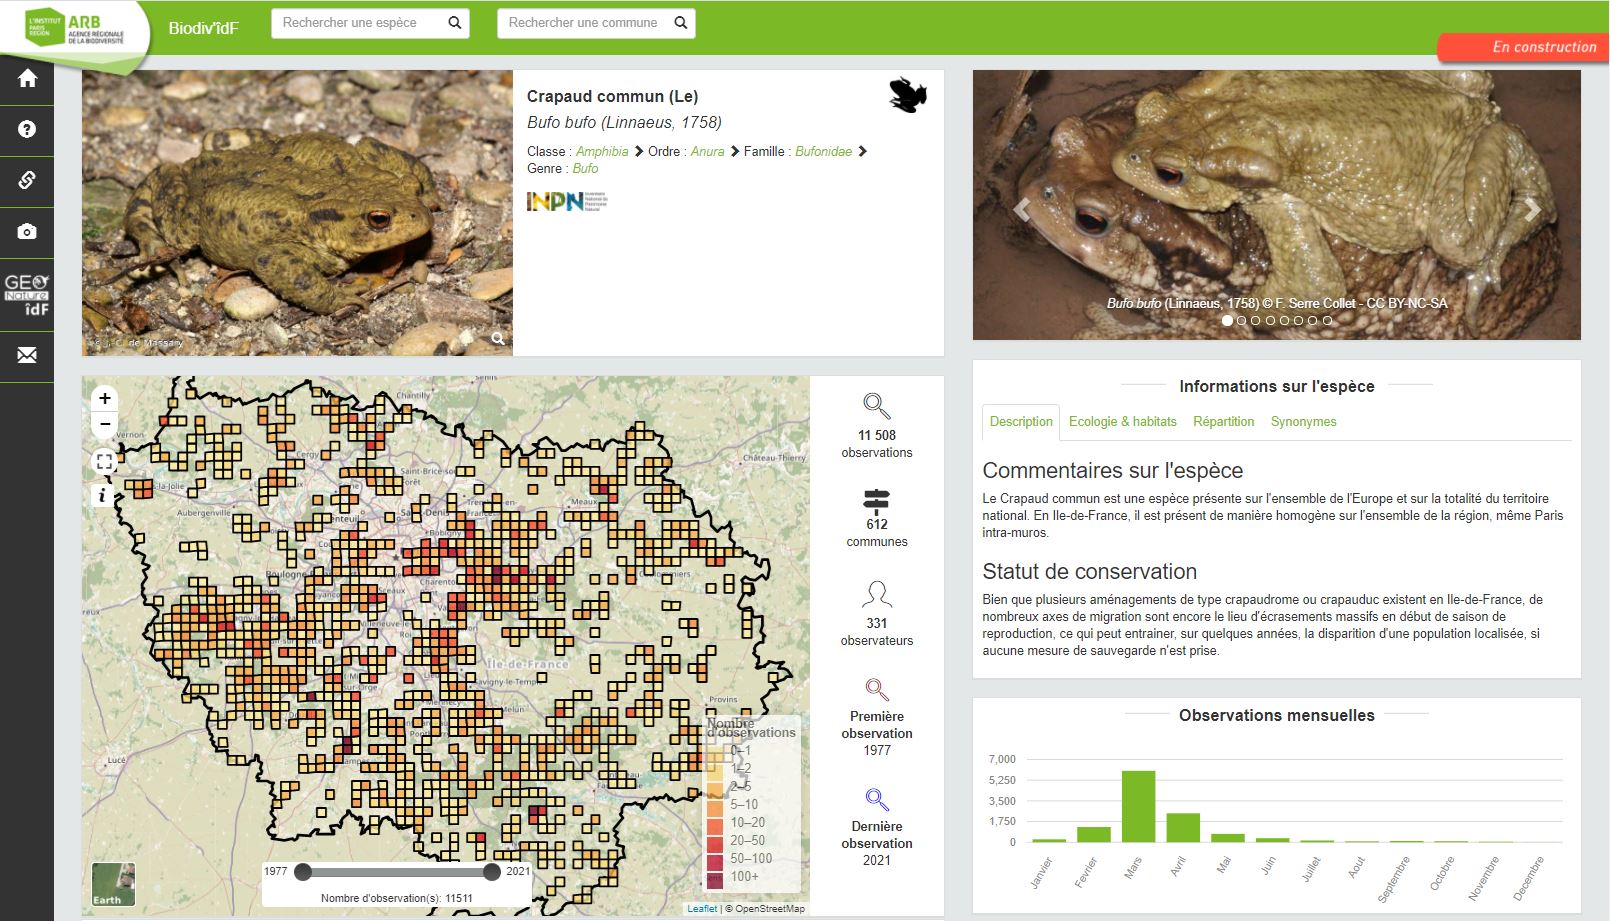 Aperçu d'une fiche espèce de l'Atlas dynamique de la biodiversité francilienne